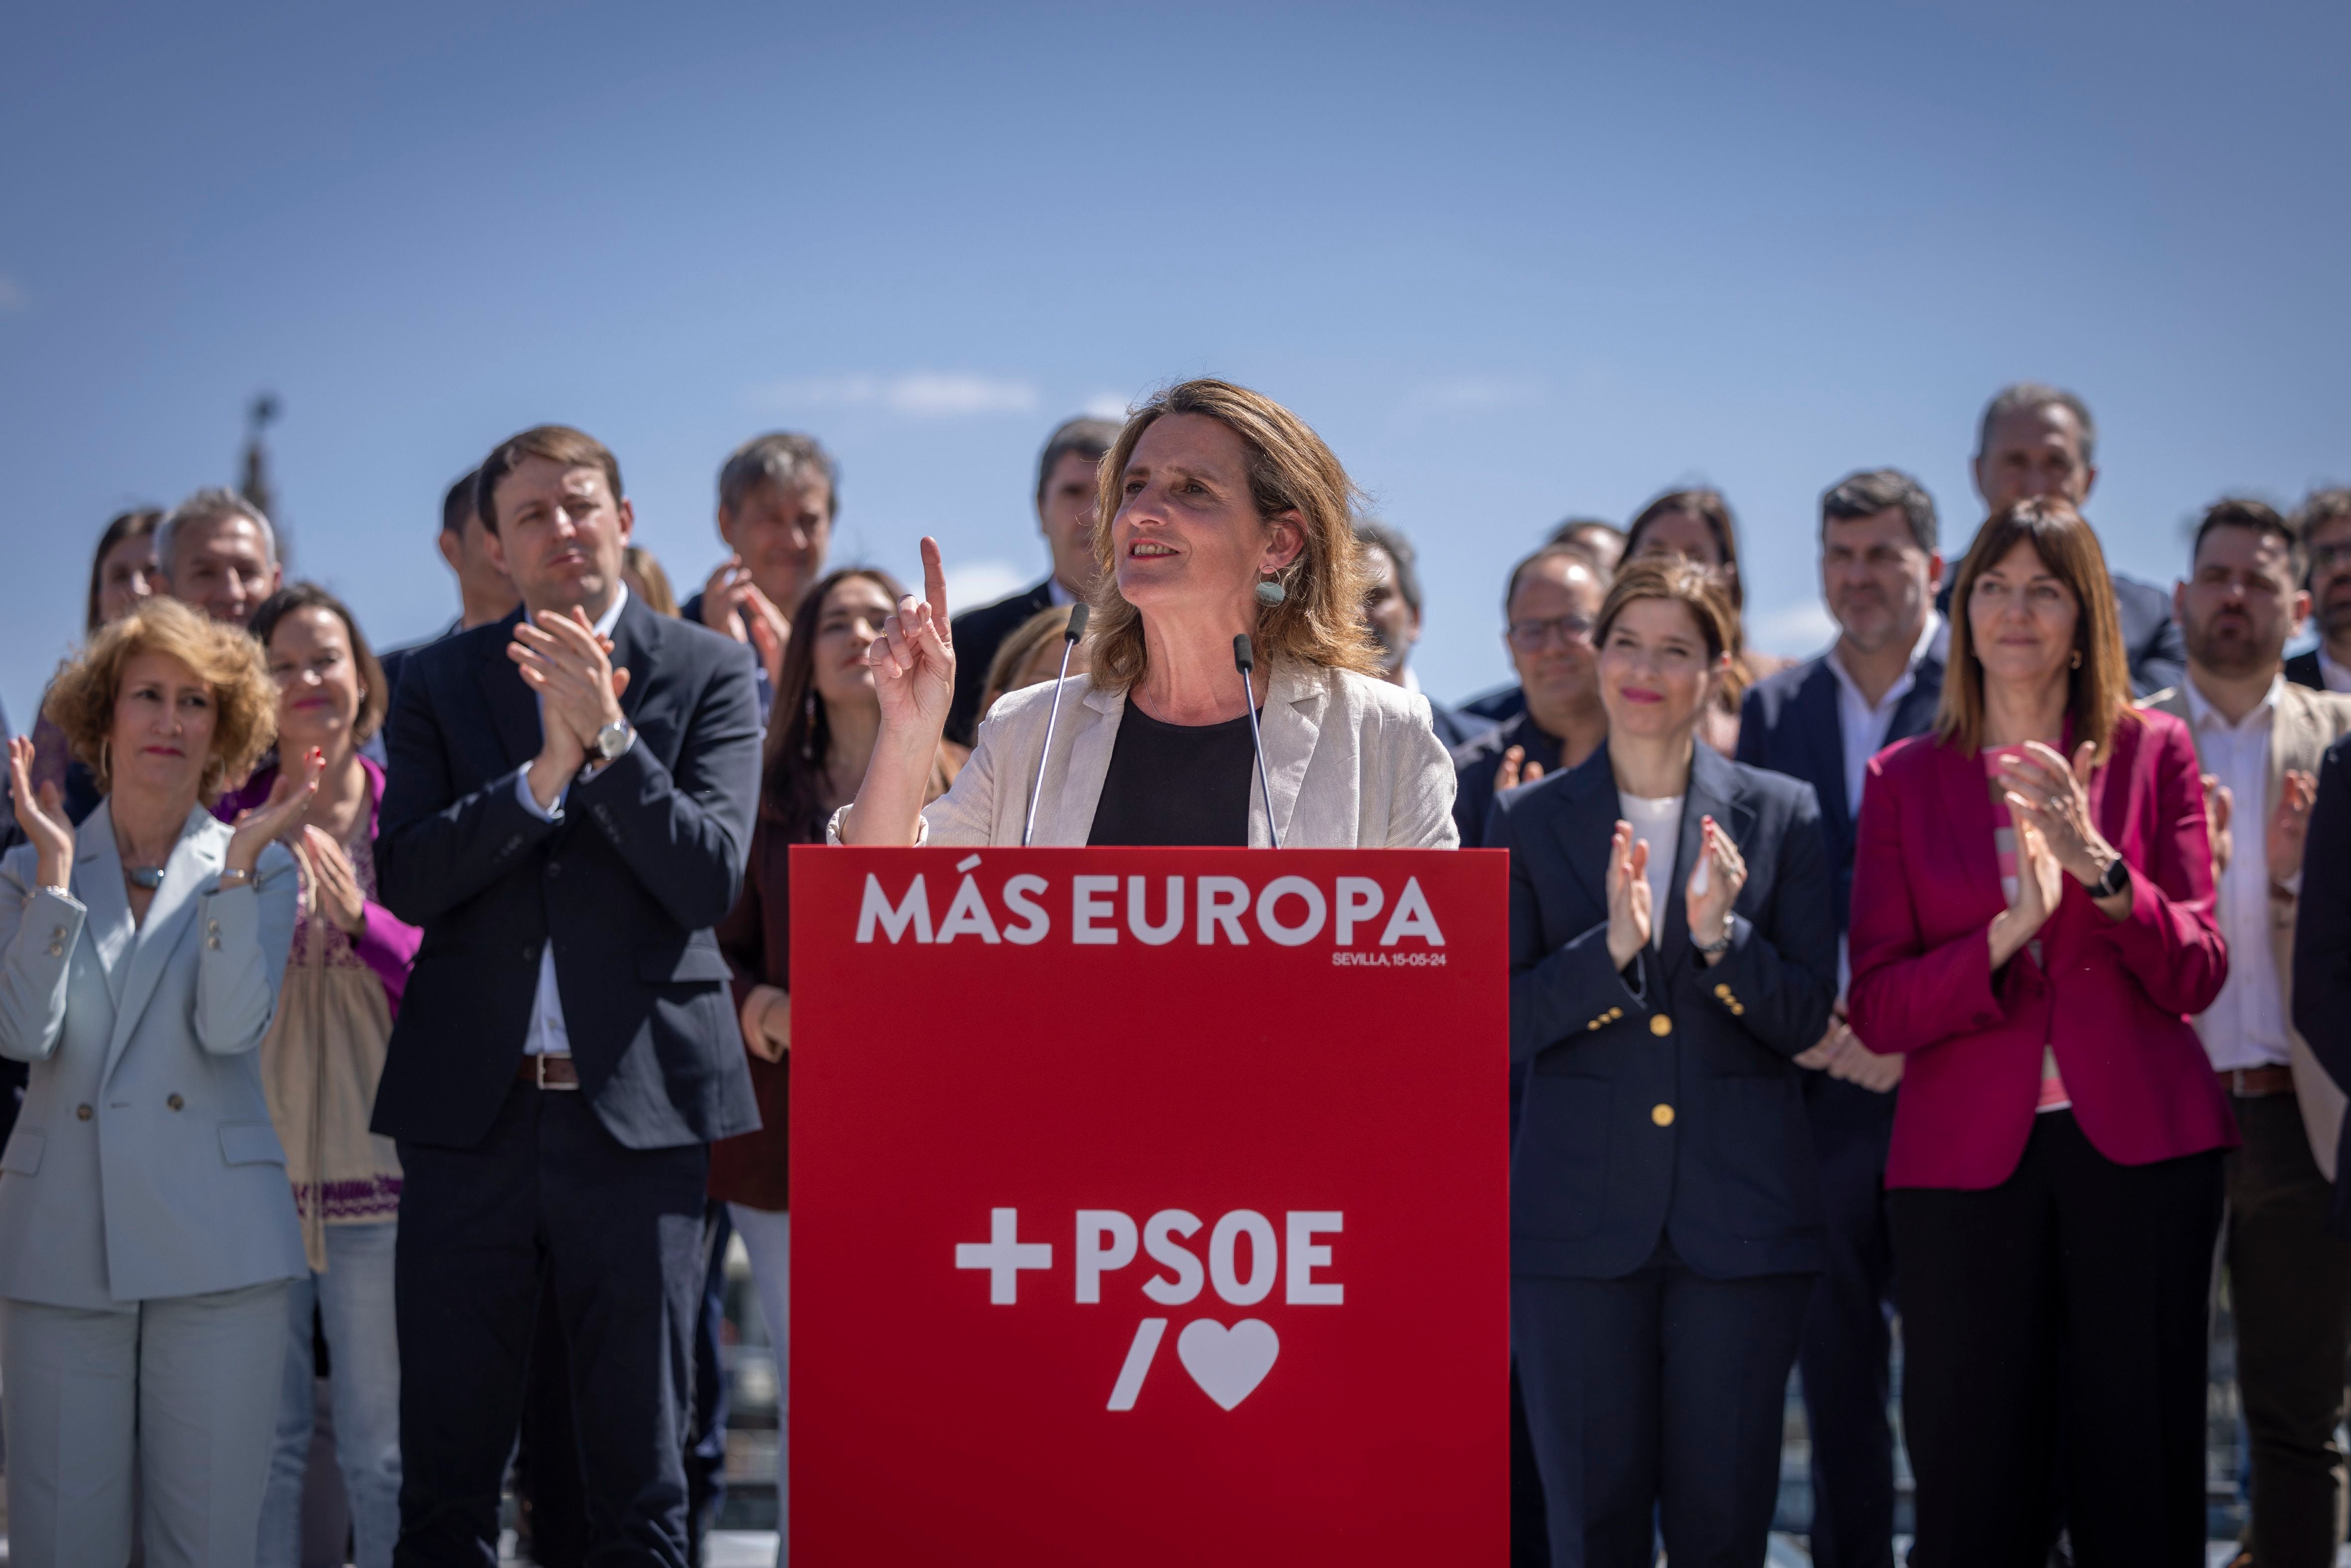 El PSOE coge impulso en las catalanas para su campaña europea más ideológica